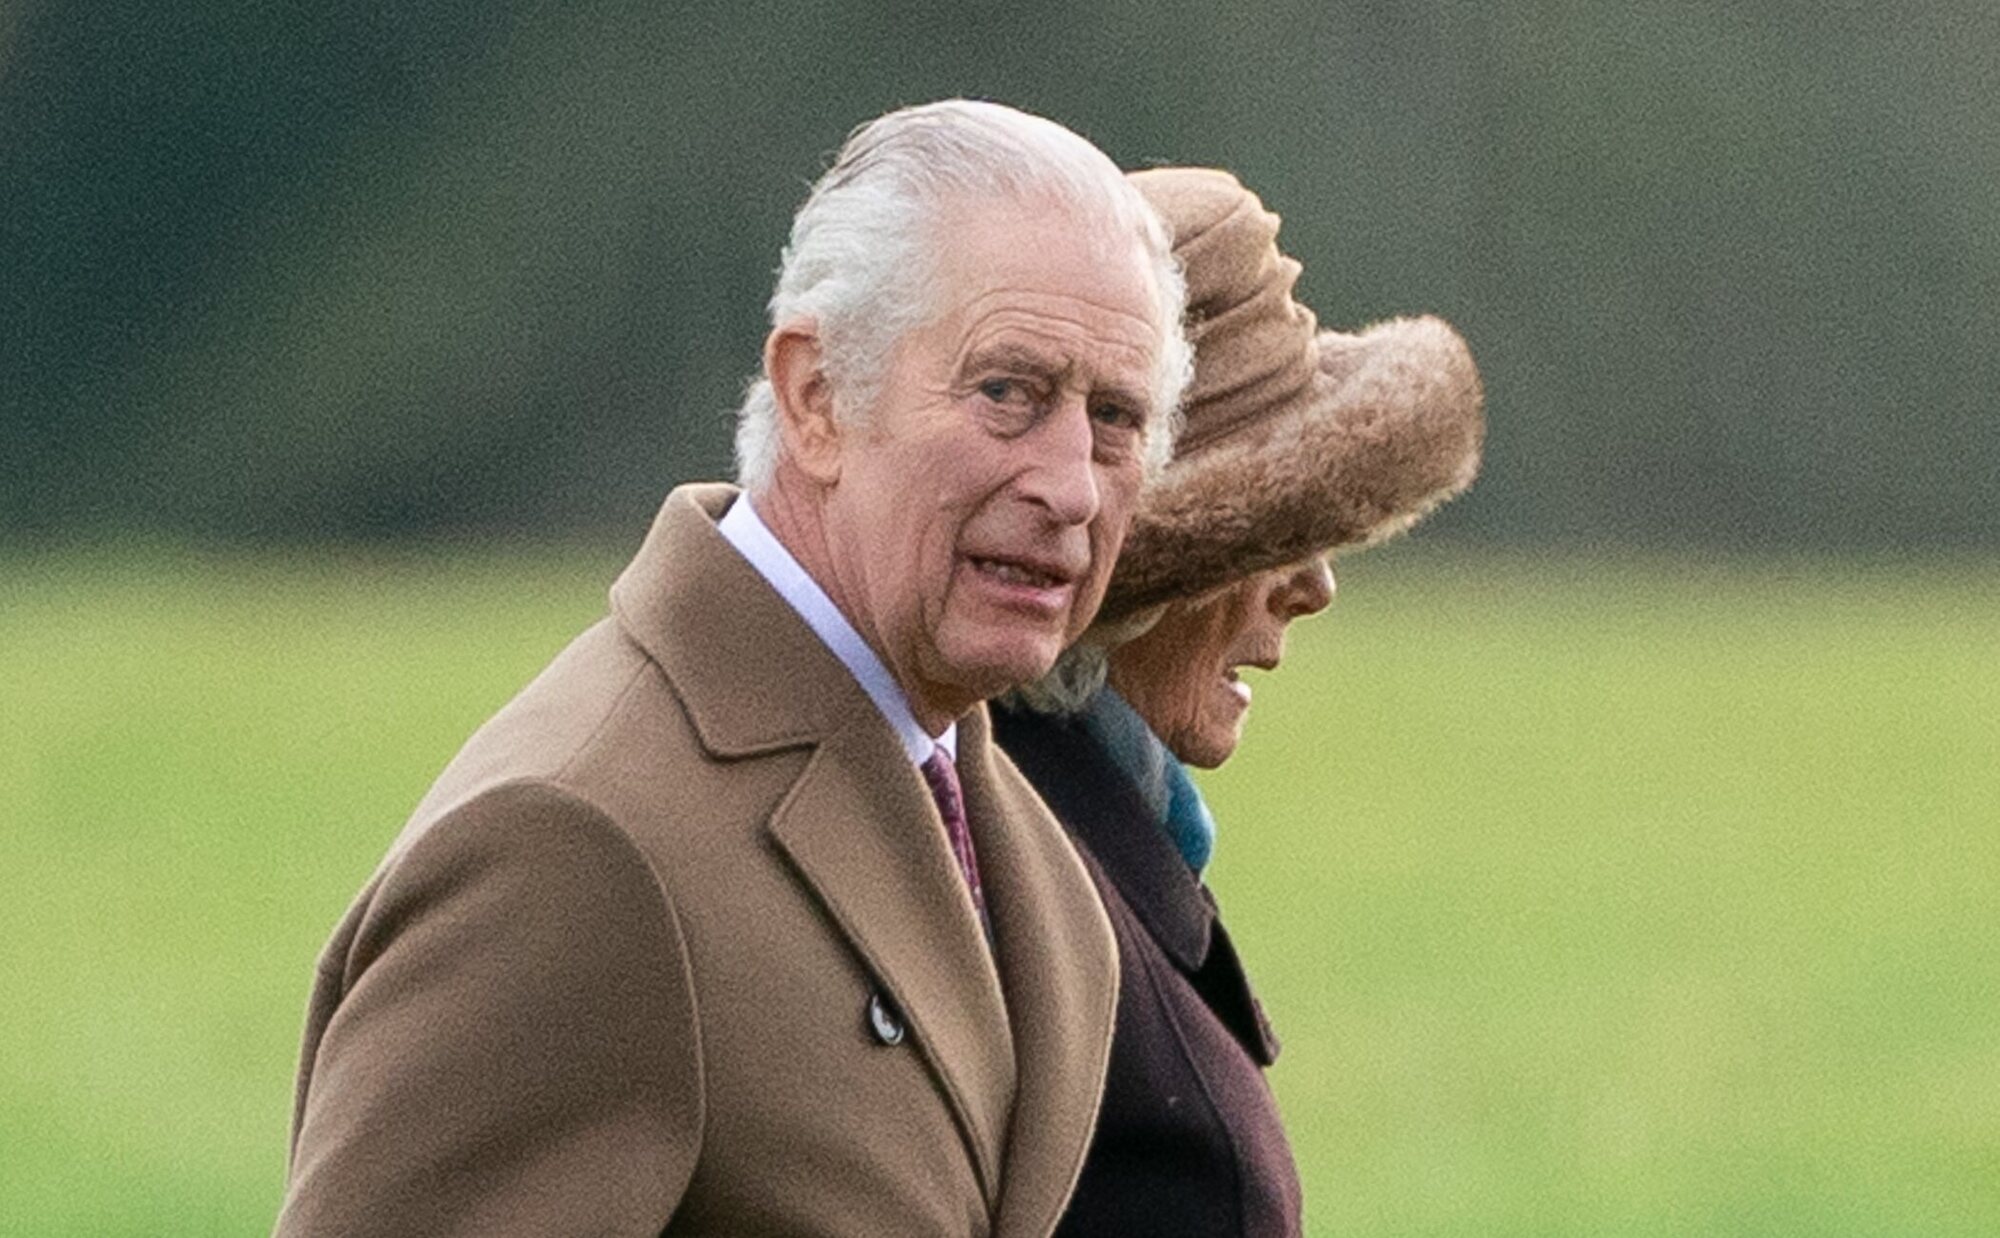 El Rey Carlos III reaparece públicamente tras darse a conocer que tiene cáncer